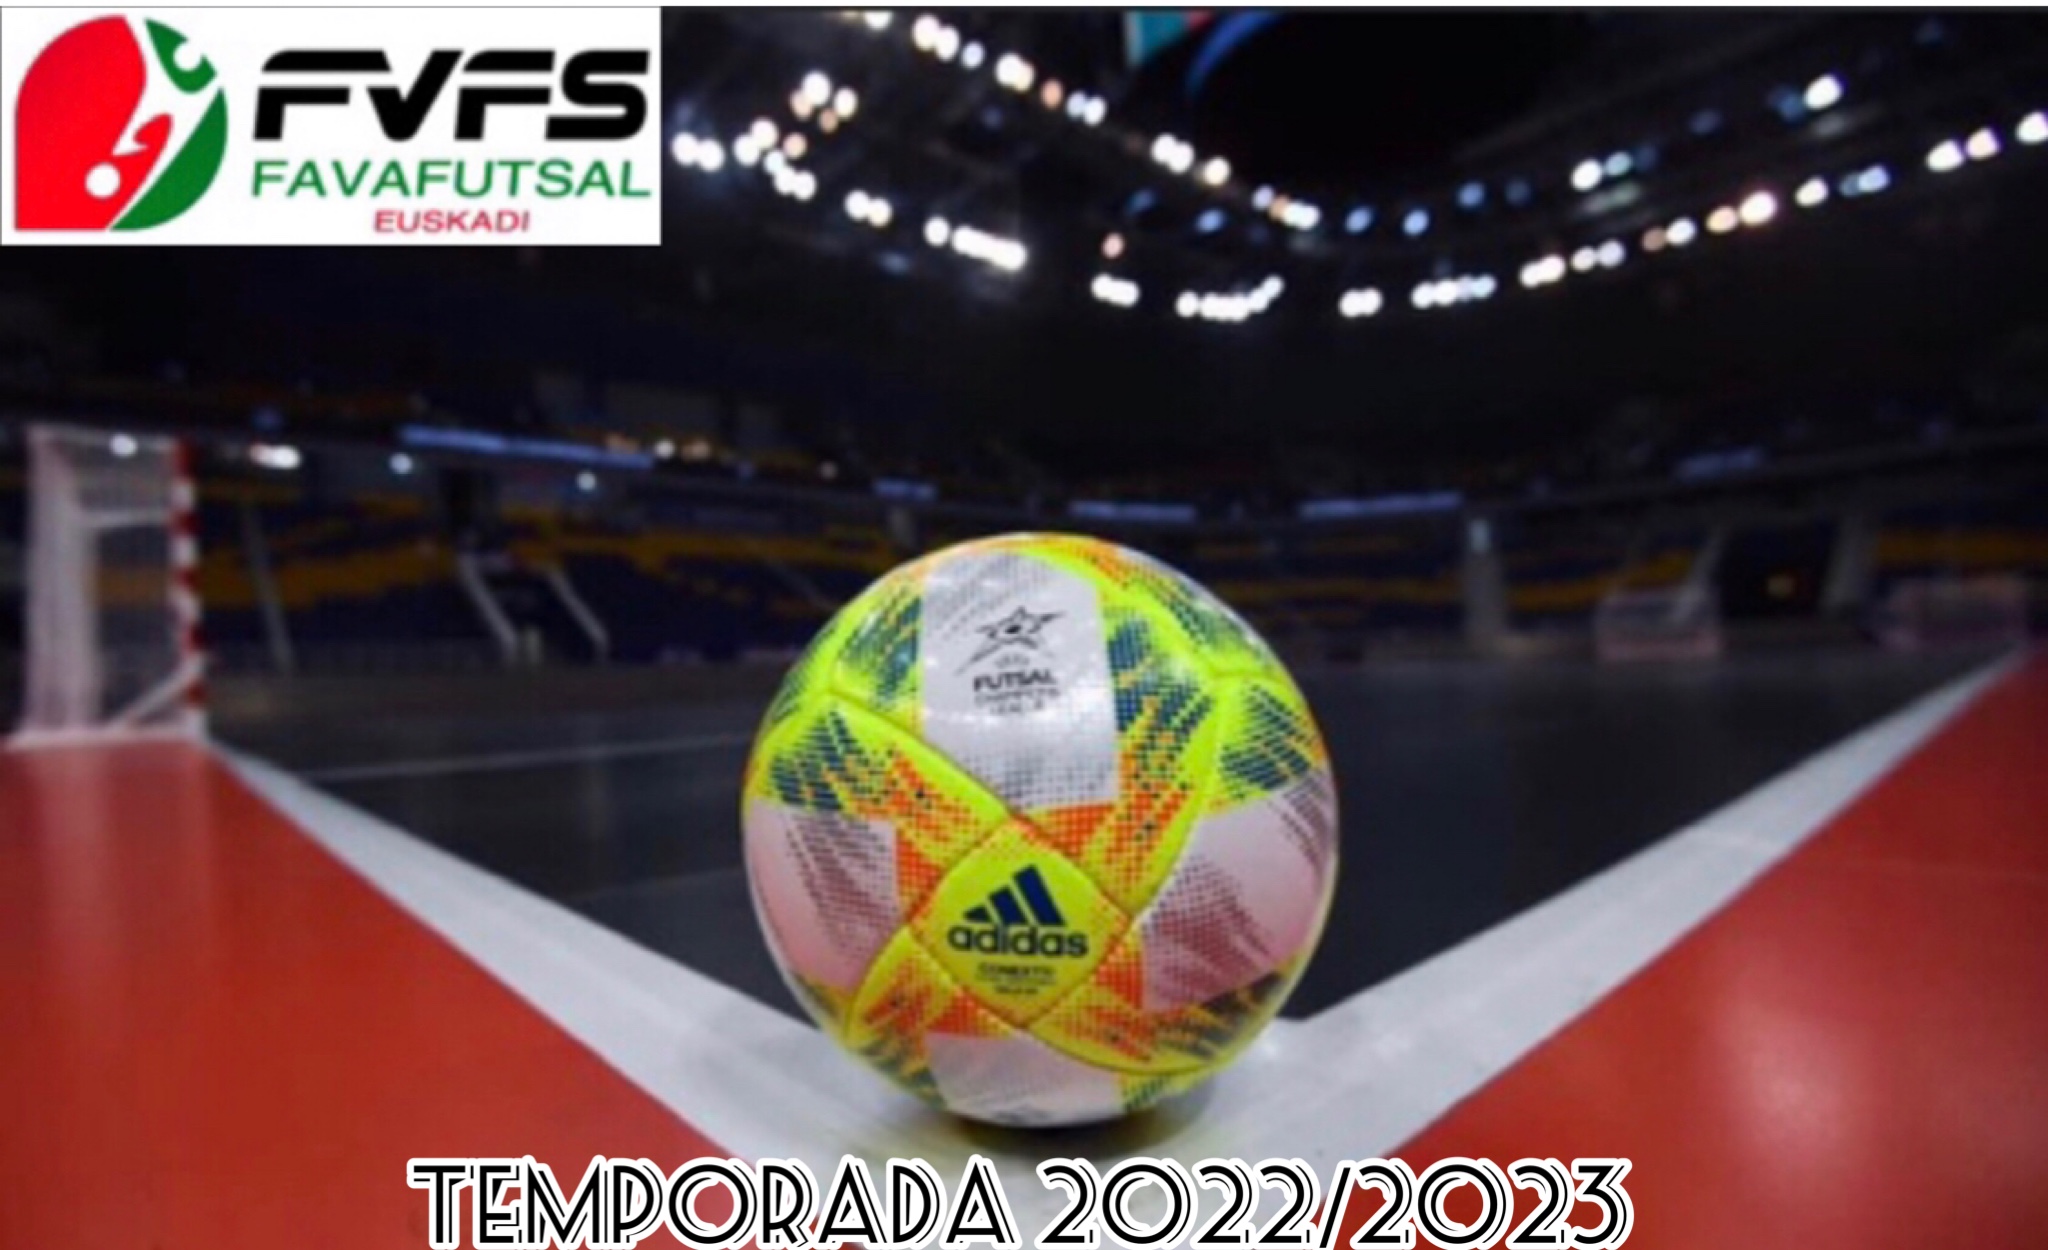 Este fin de semana del 22 y 23 de octubre, Favafutsal Euskadi da inicio a sus competiciones para la temporada 2022/2023.